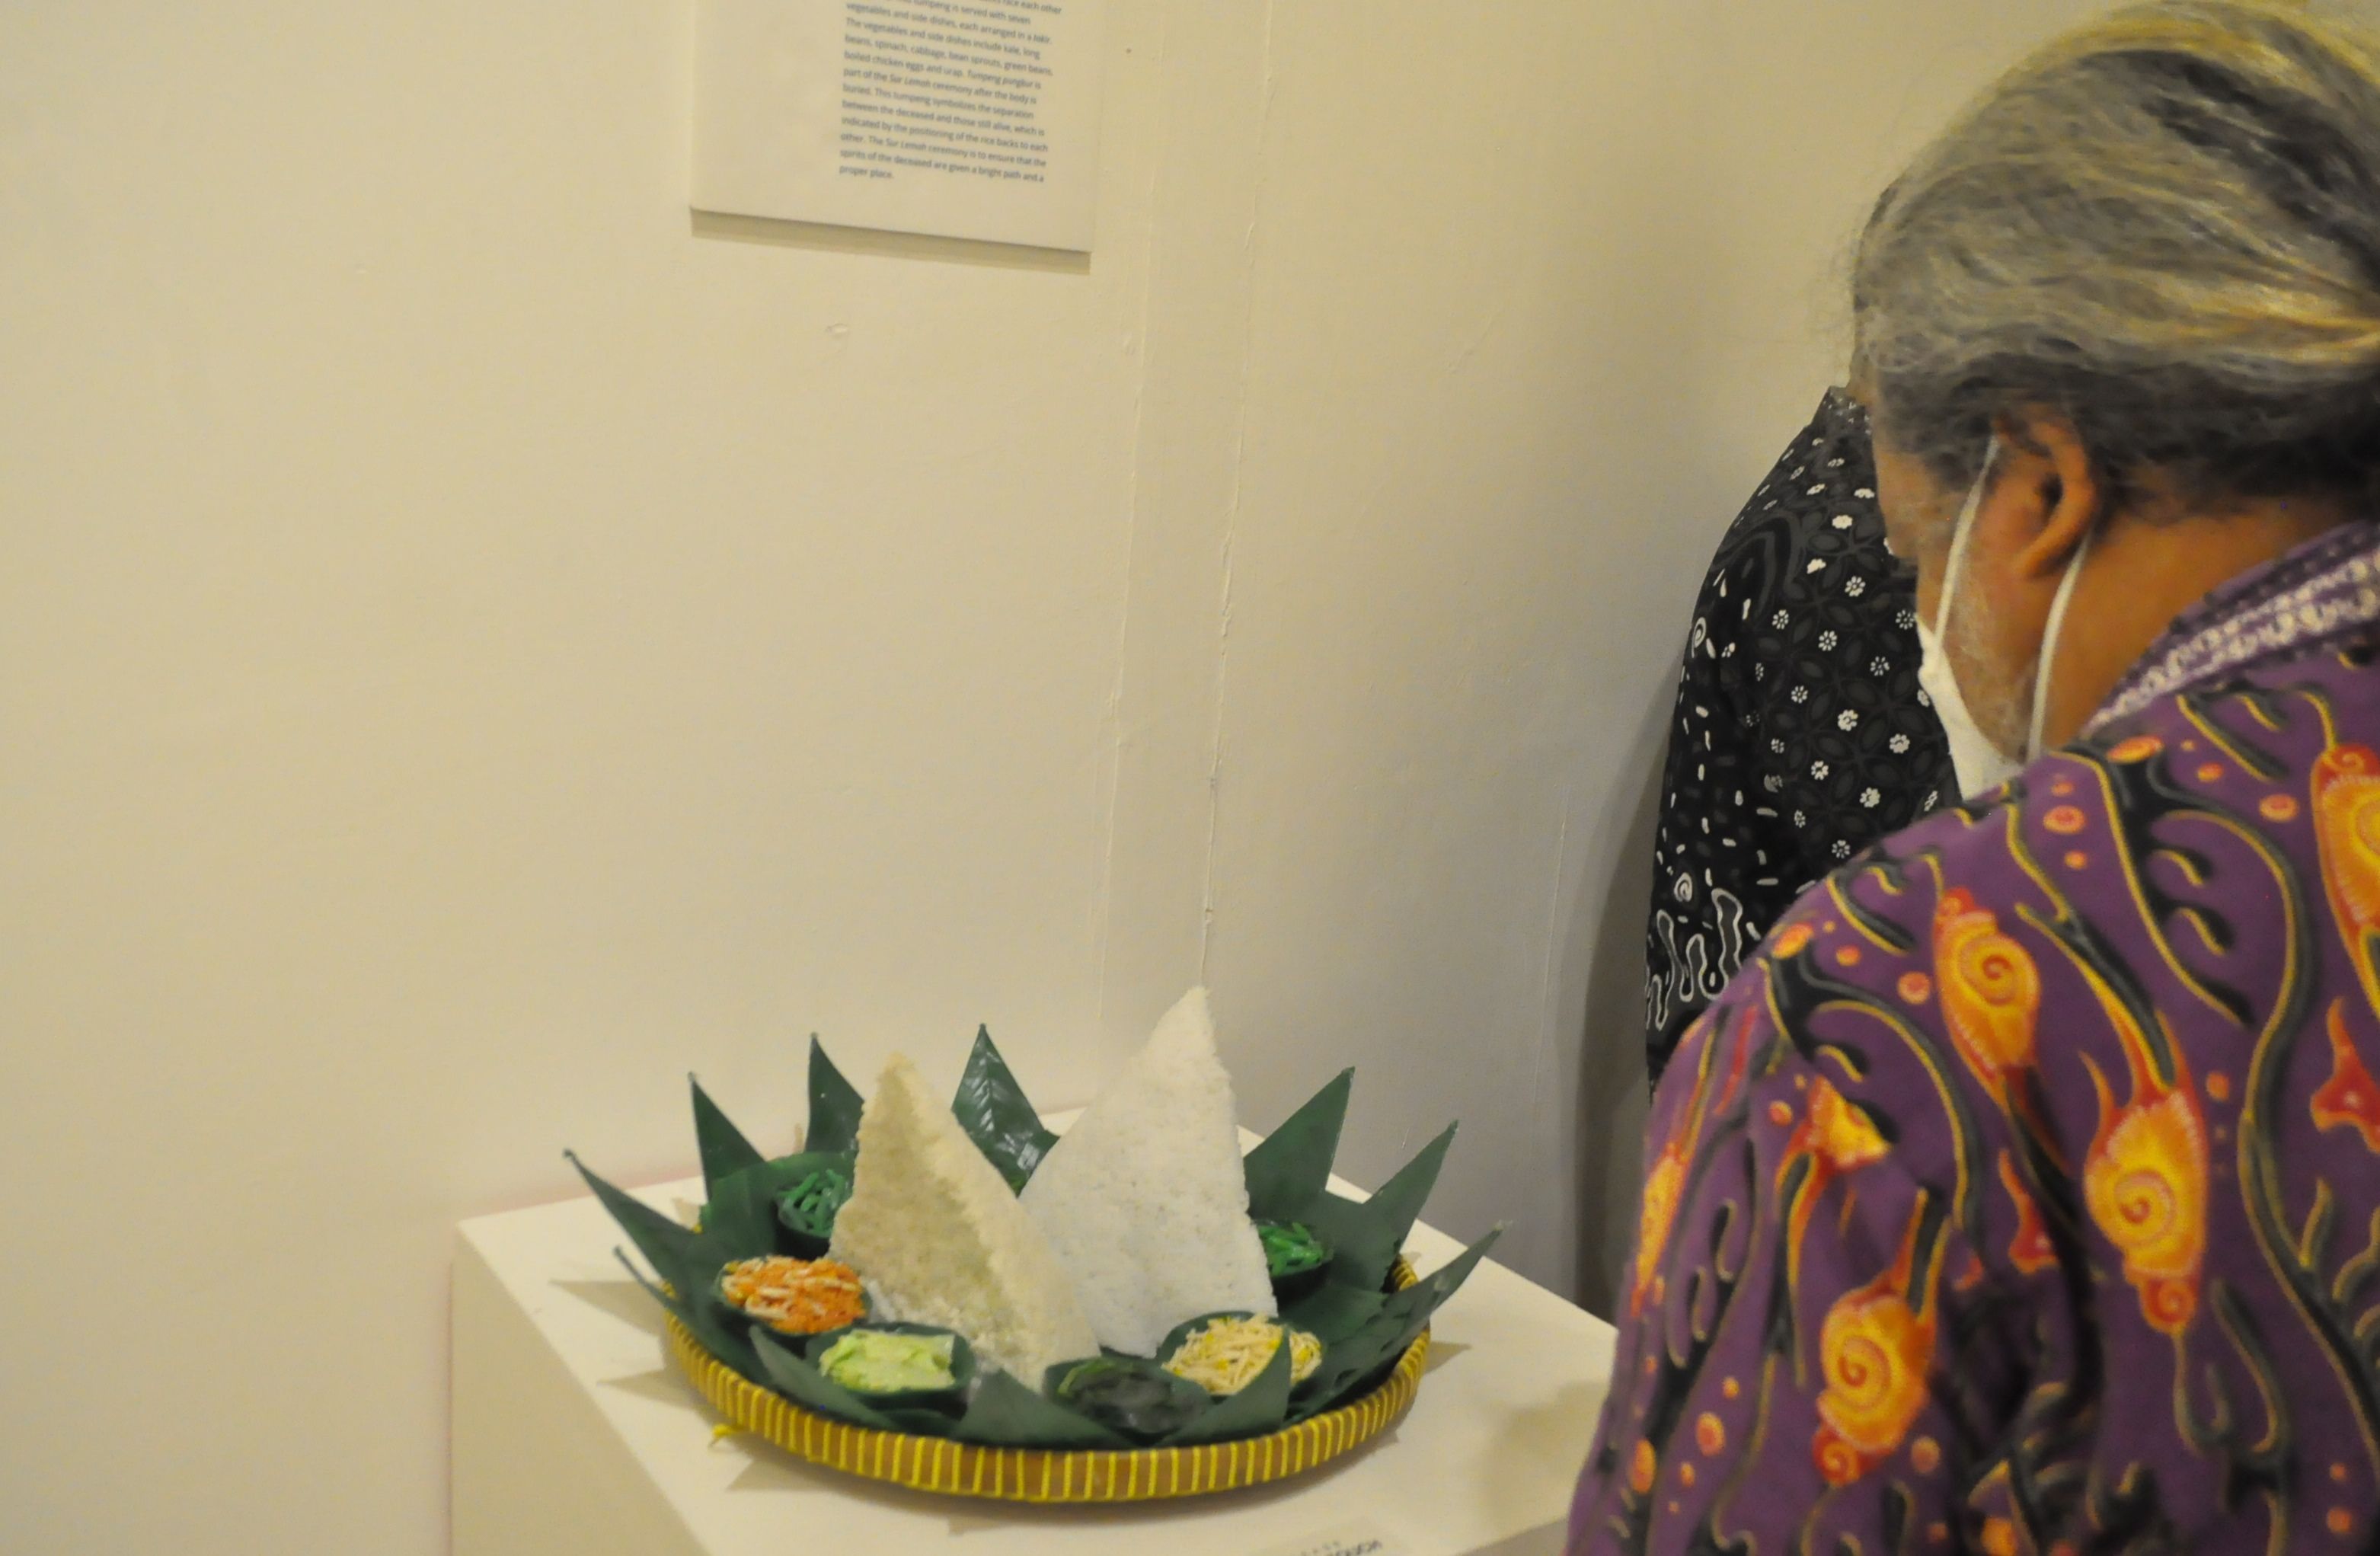 Aneka bentuk dan warna Tumpeng, dalam pameran bertajuk ‘Upaboga: Ketika Makanan Bercrita’, di Pameran Temporer Museum Sonobudoyo, Yogyakarta.